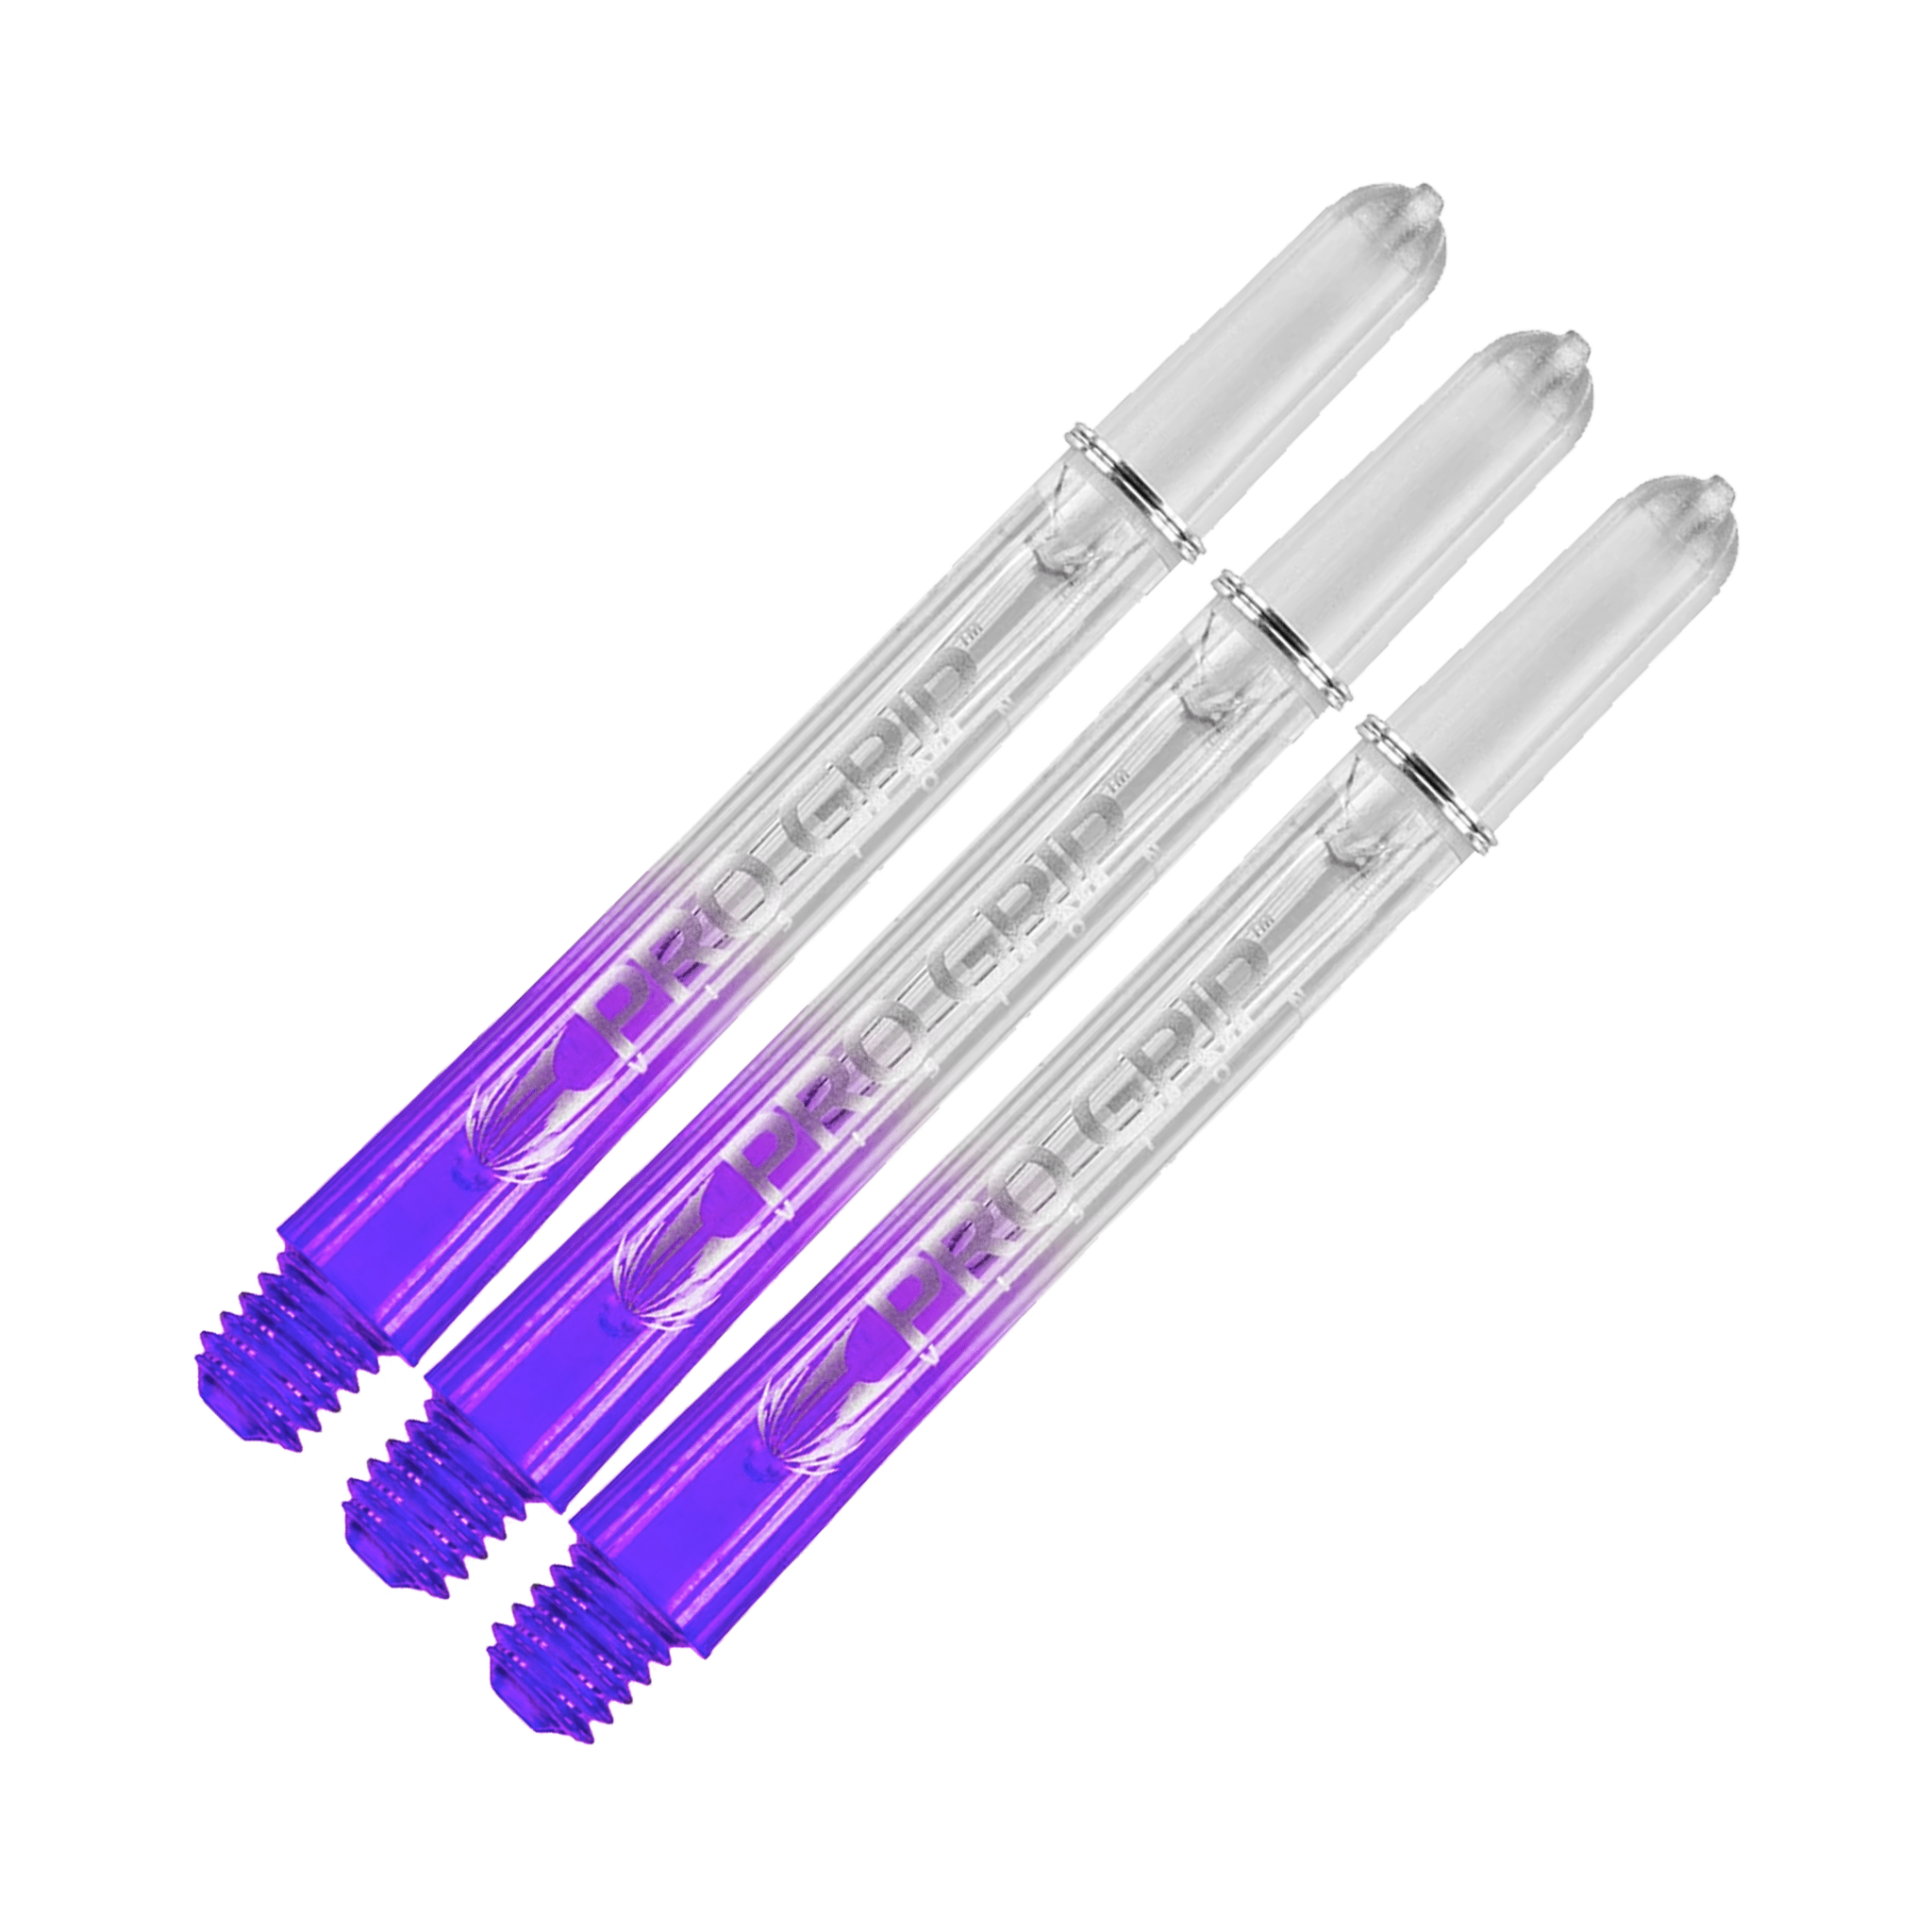 Target Pro Vision - Polycarbonate Dart Shafts Medium (48mm) / Purple Shafts